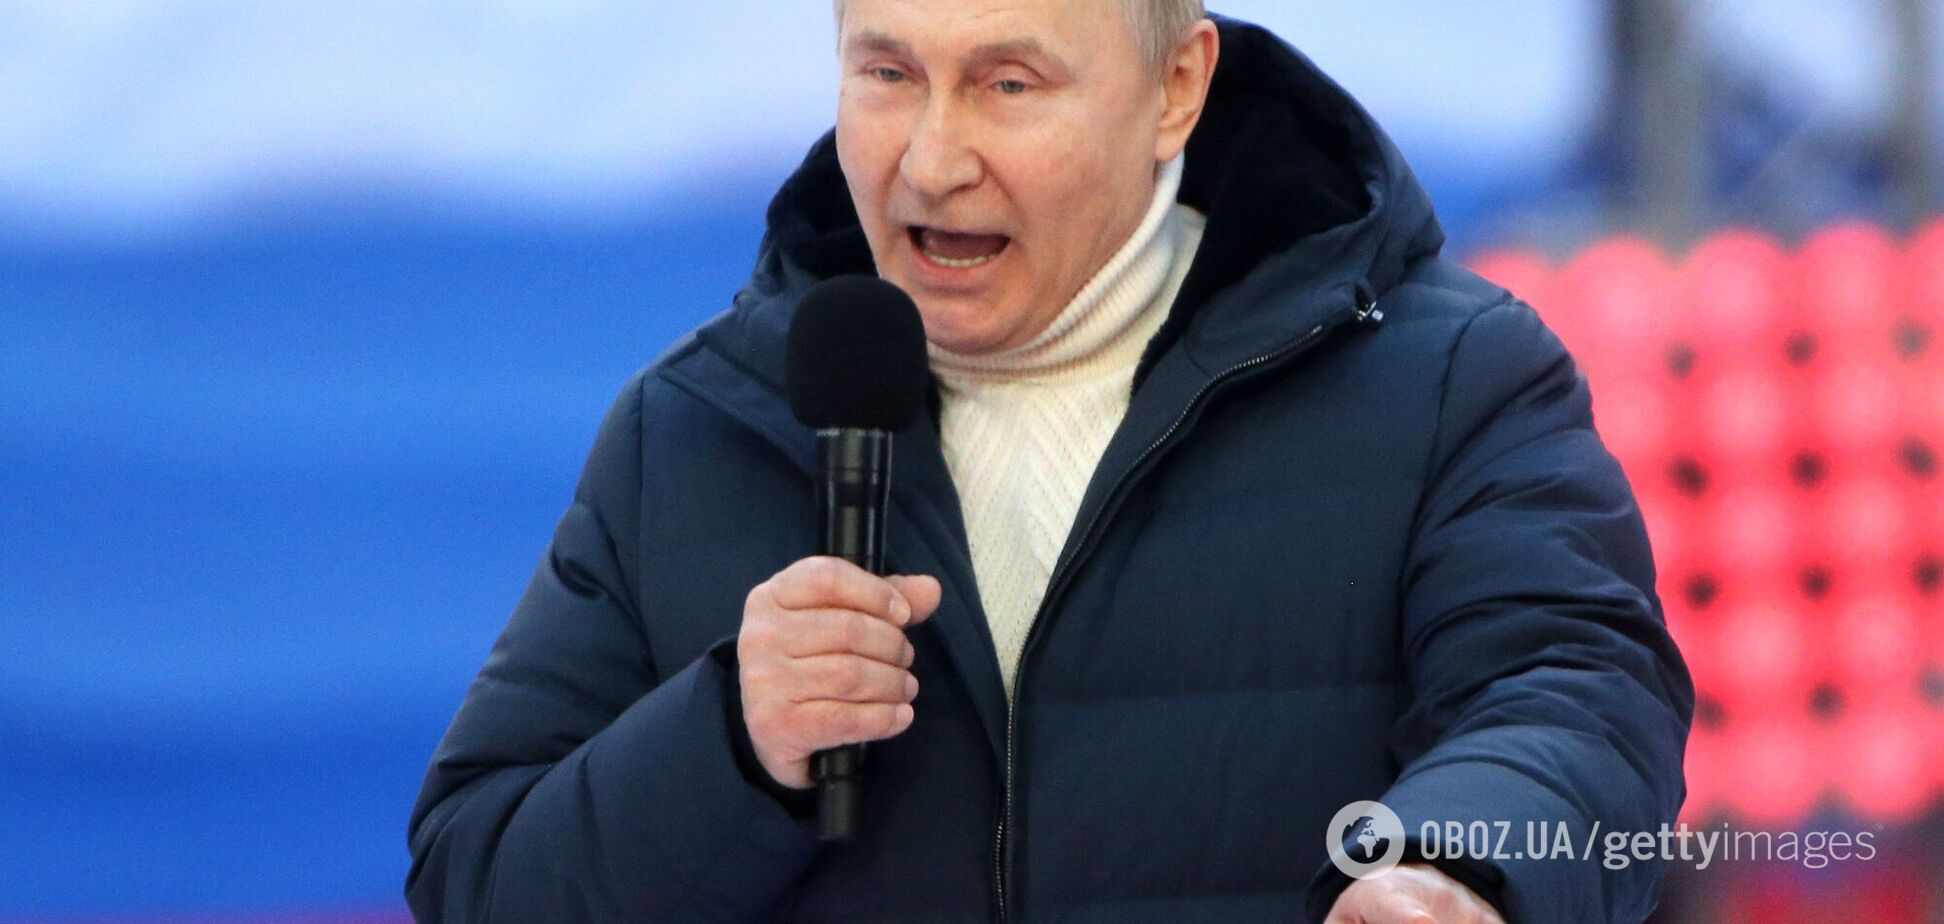 Шановні колеги, не пишіть, що Путін божевільний. Чому це небезпечно?